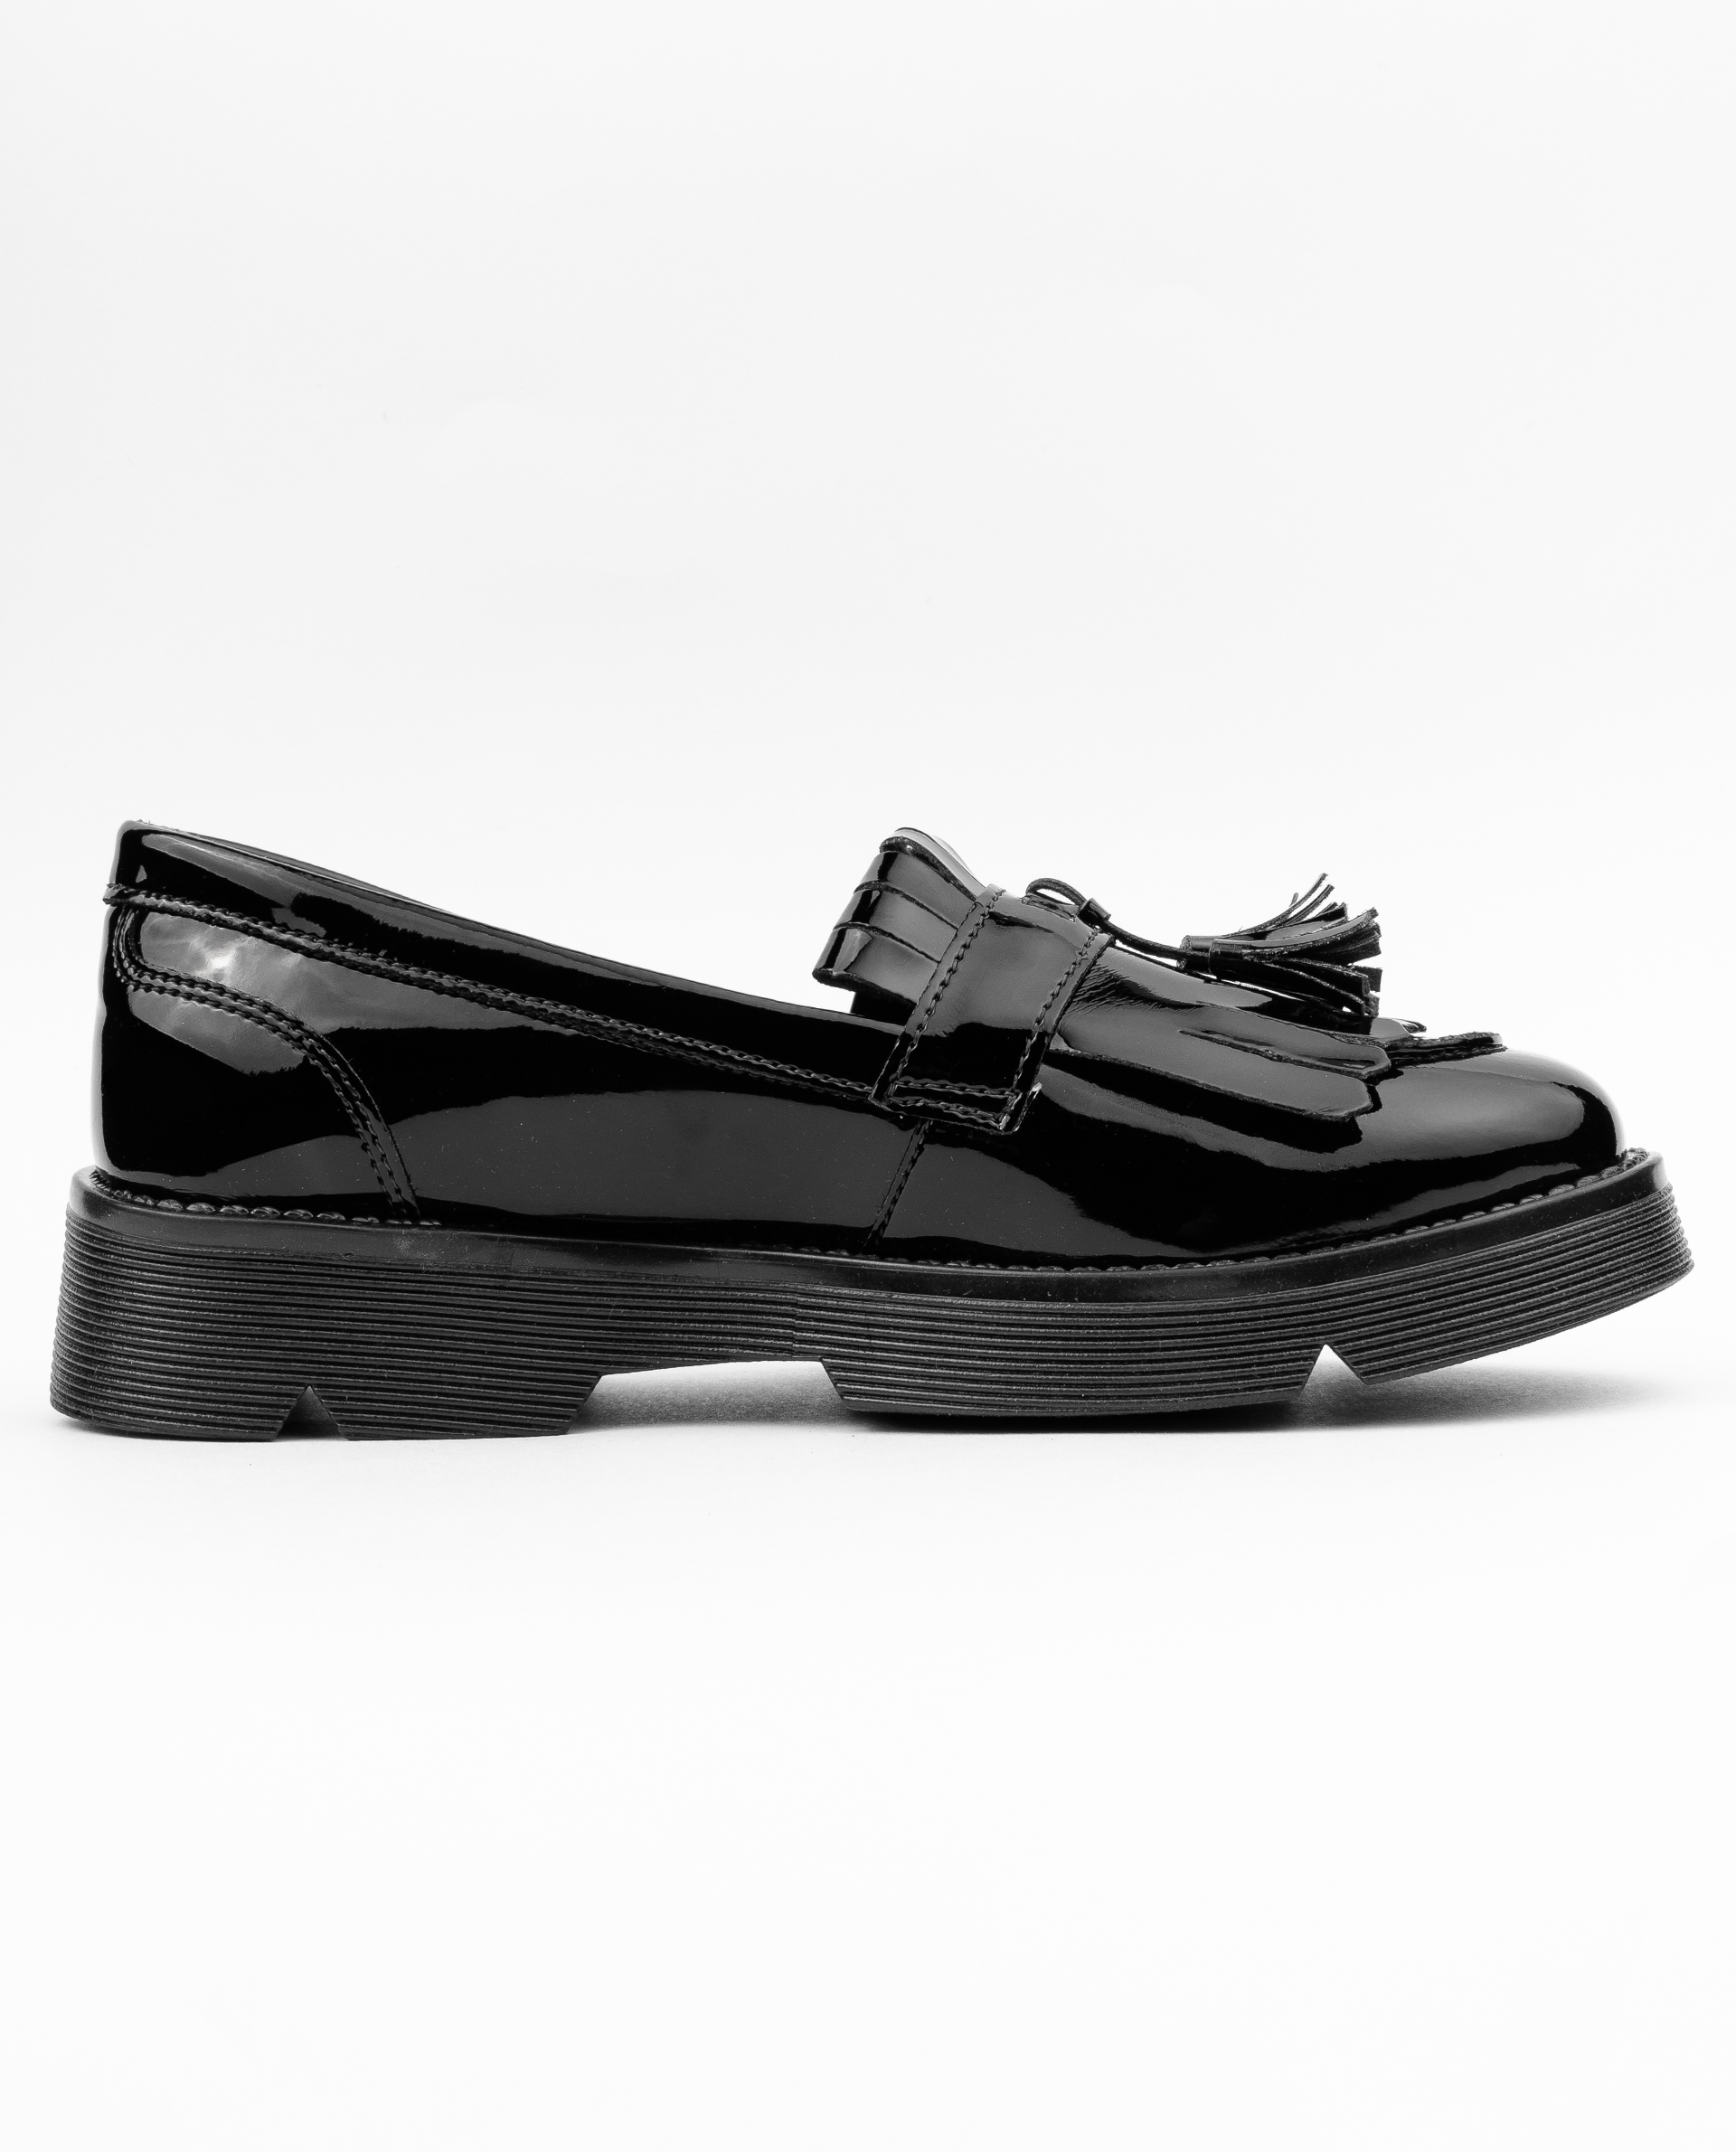 Туфли из лаковой искусственной кожи Gulliver 11908GJS0002, размер 40, цвет черный - фото 2